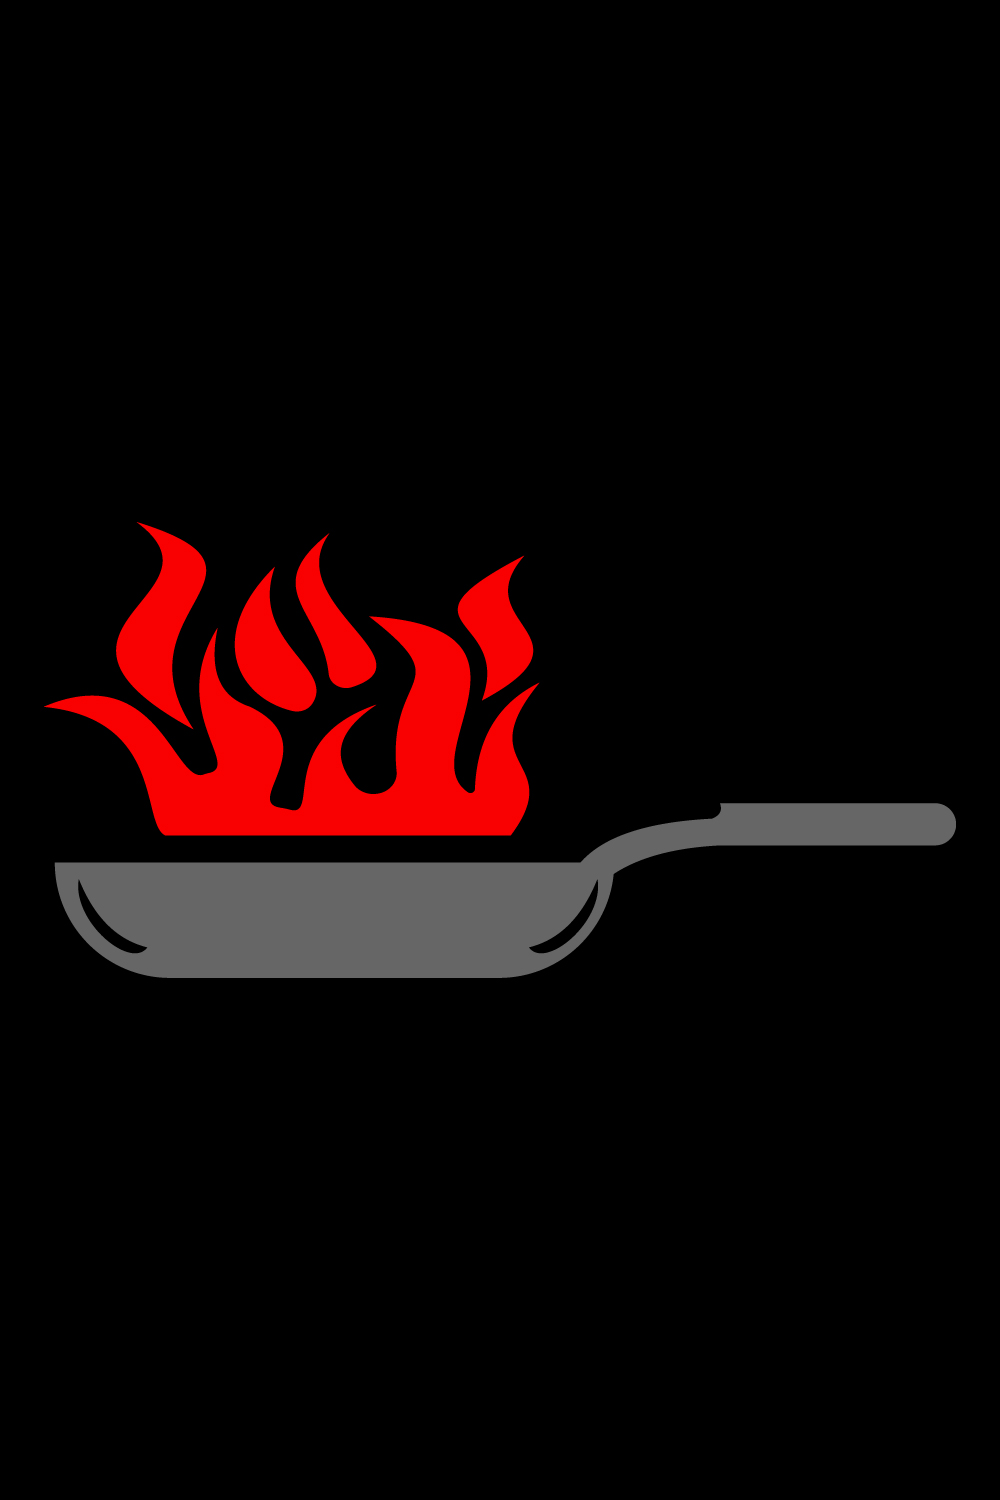 Cooking, cuisine, cookery logo Restaurant, menu, cafe, diner label logo design, Vector illustration pinterest preview image.